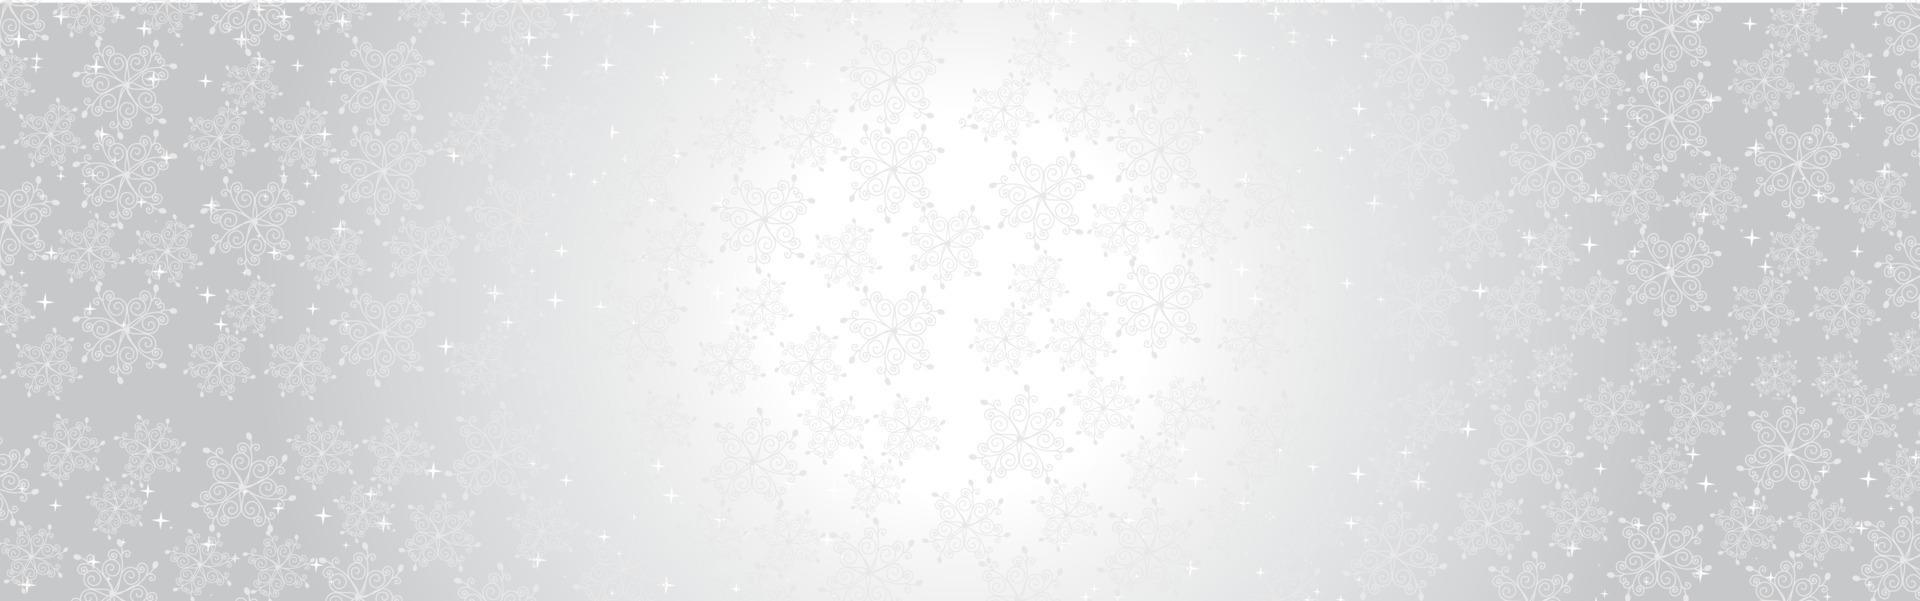 papel de parede de padrão sem emenda de floco de neve de Natal lasca brilhante vetor